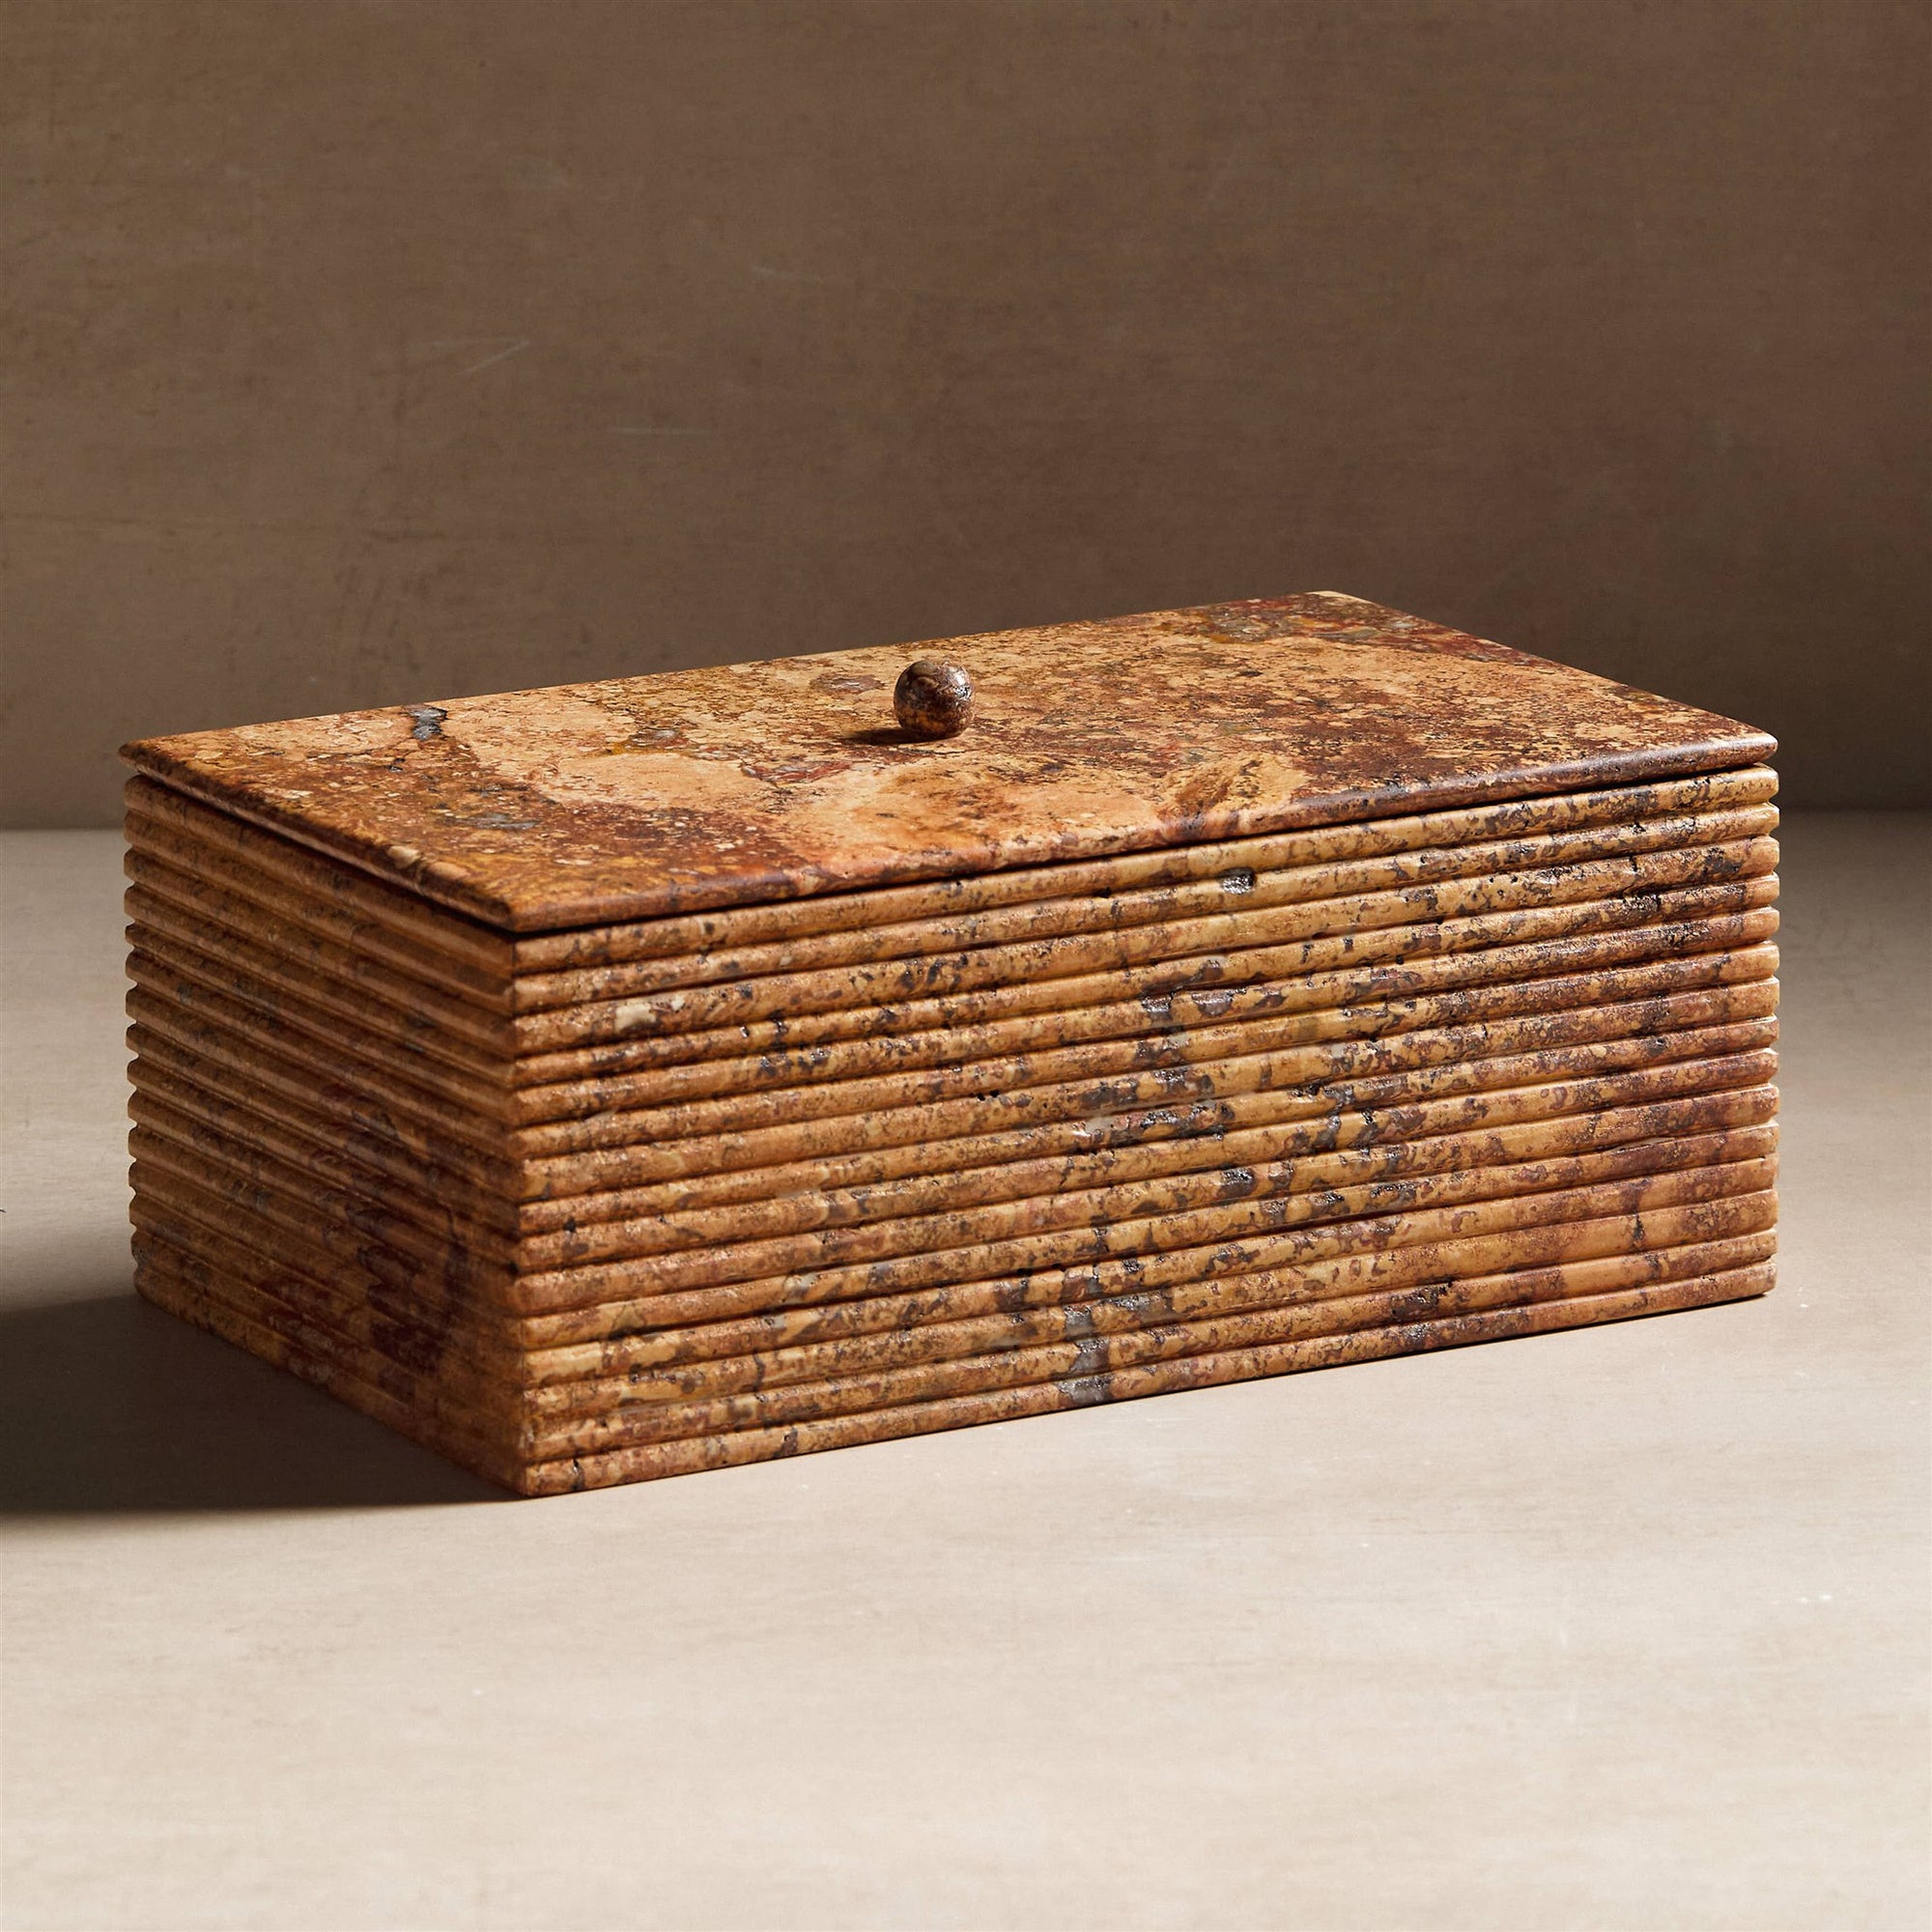 Stone box with ribbing made of travertine